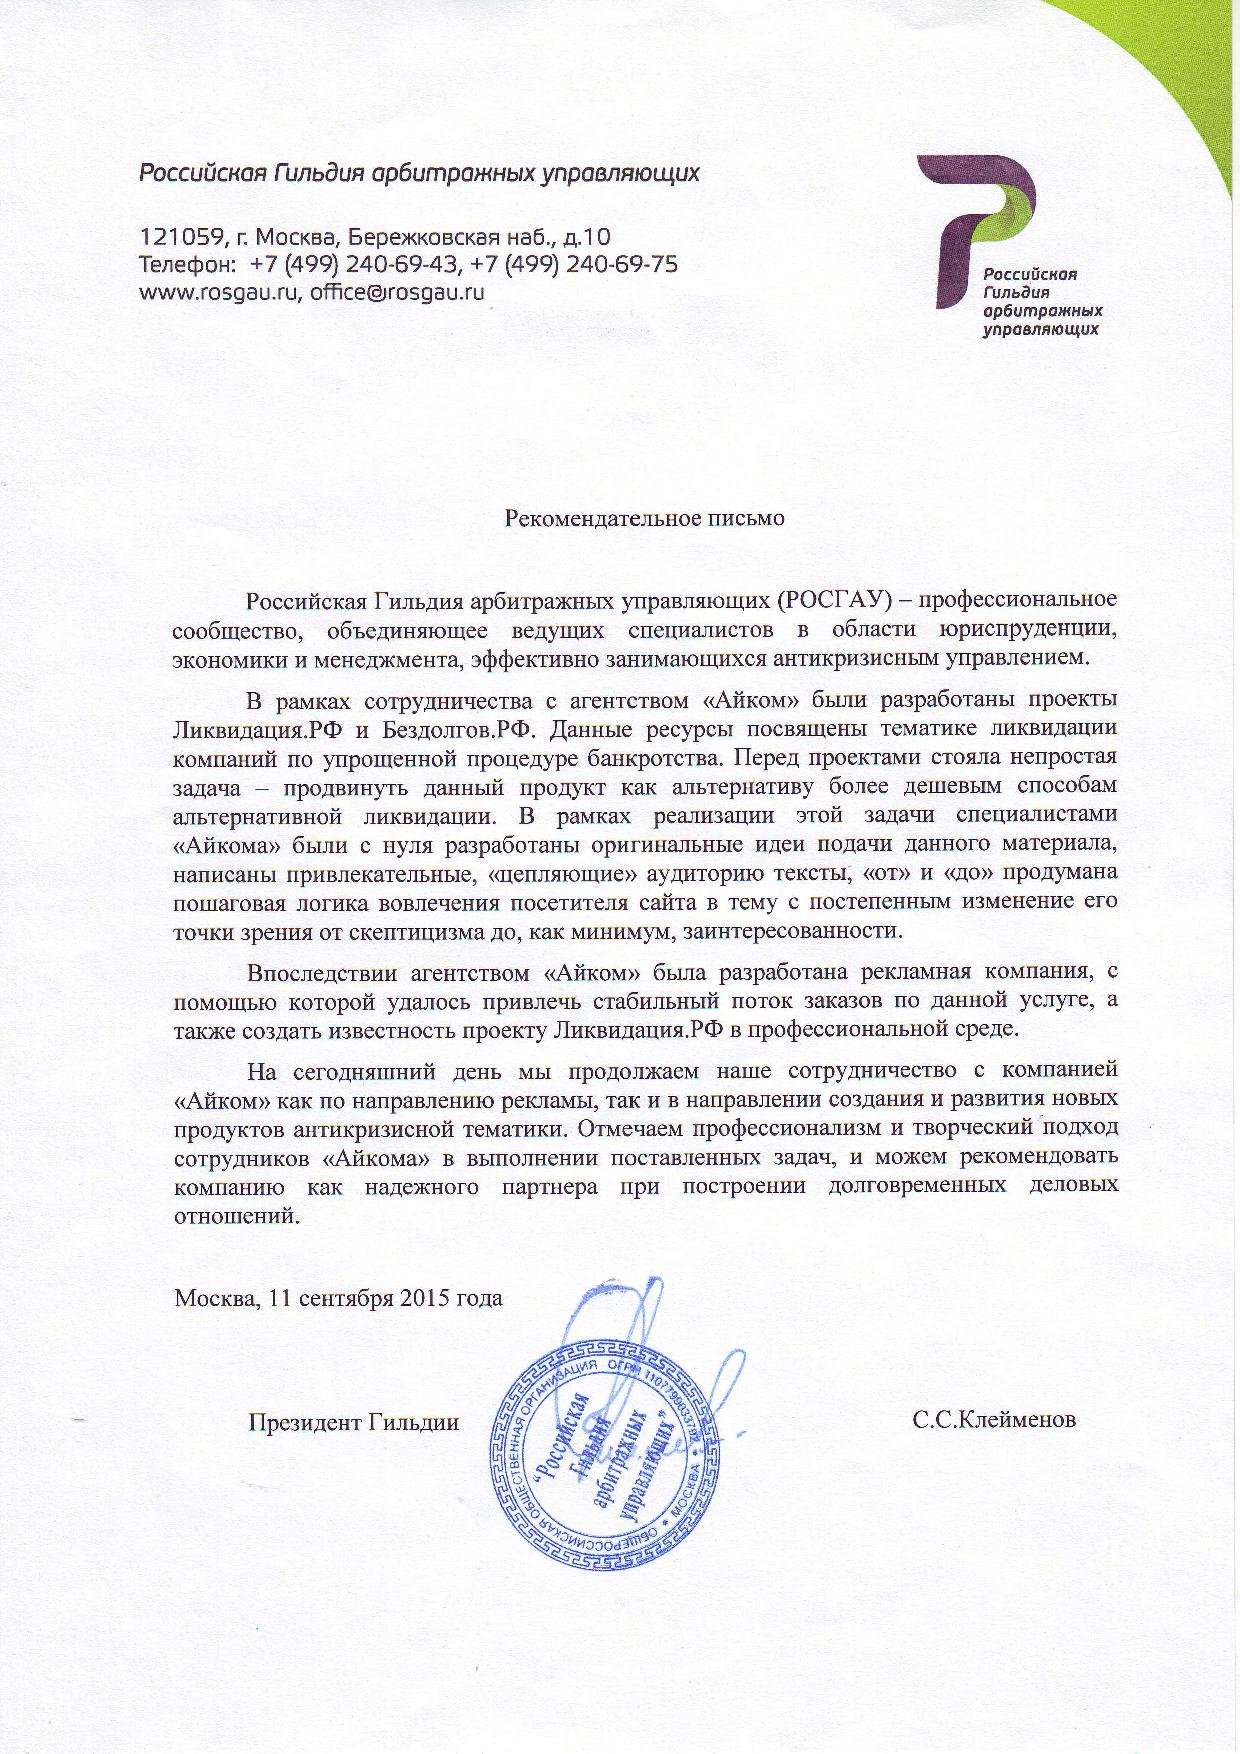 Отзыв и рекомендательное письмо о компании Айком от проекта Банкрот.рф - РОСГАУ